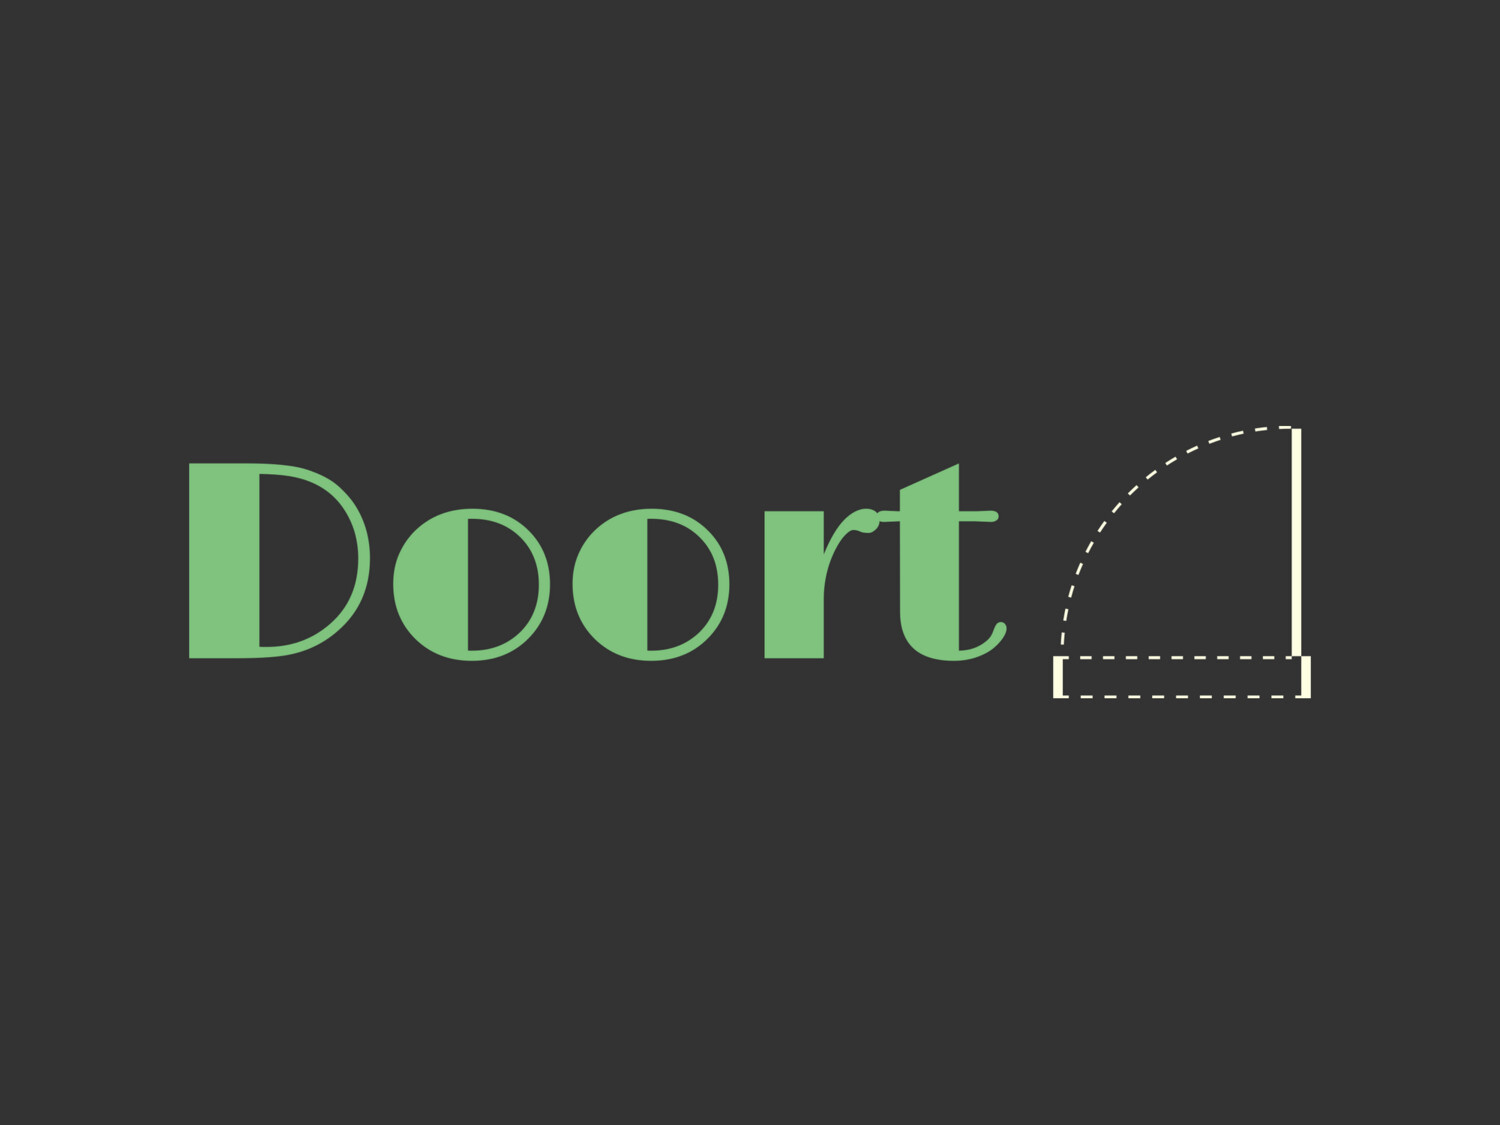 Doort.com